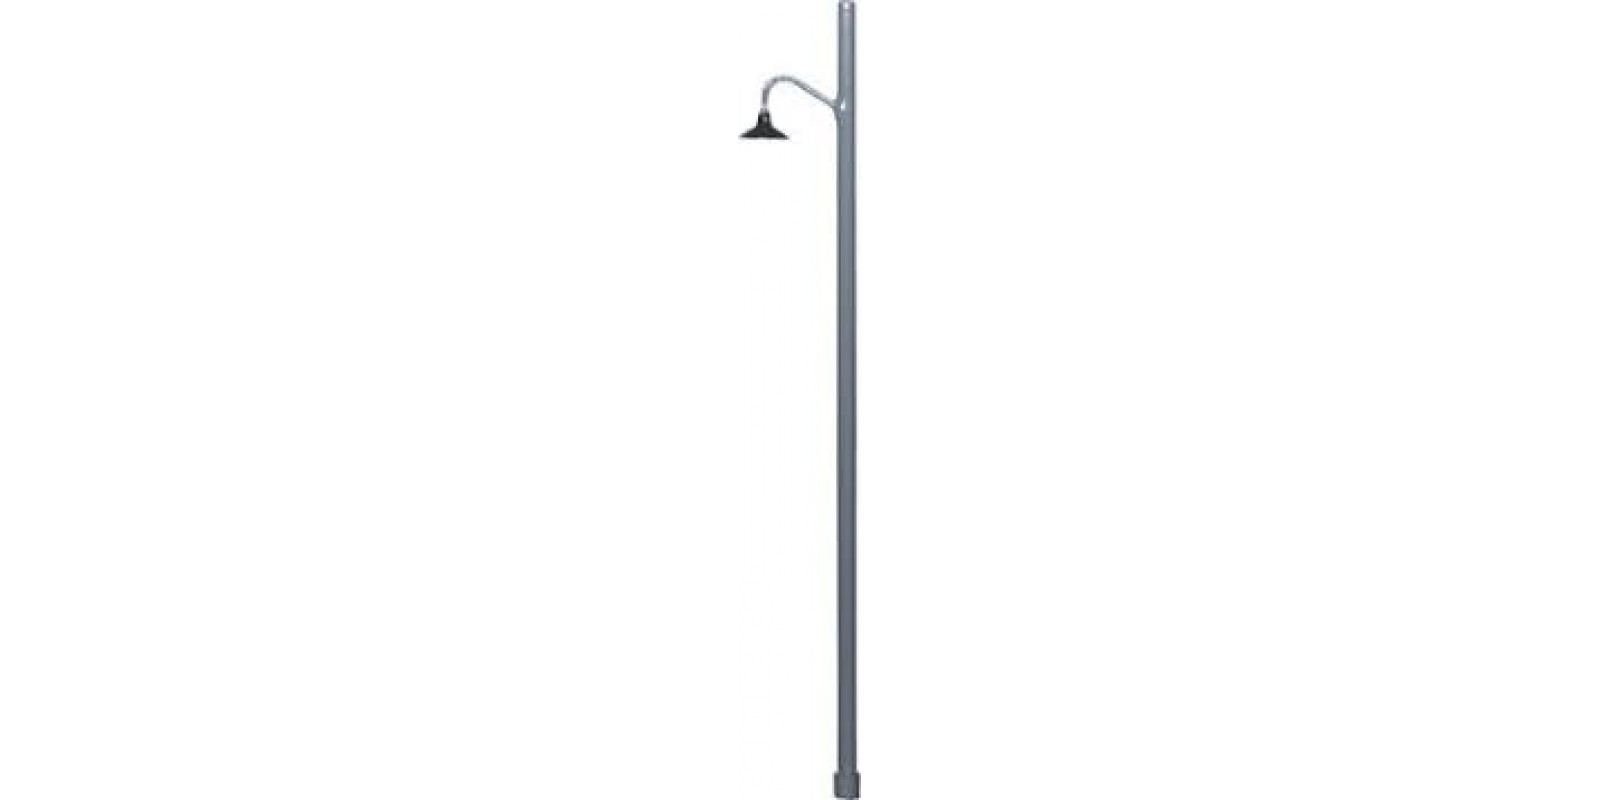 BE190251 Street lamp. gauge N,  68 mm